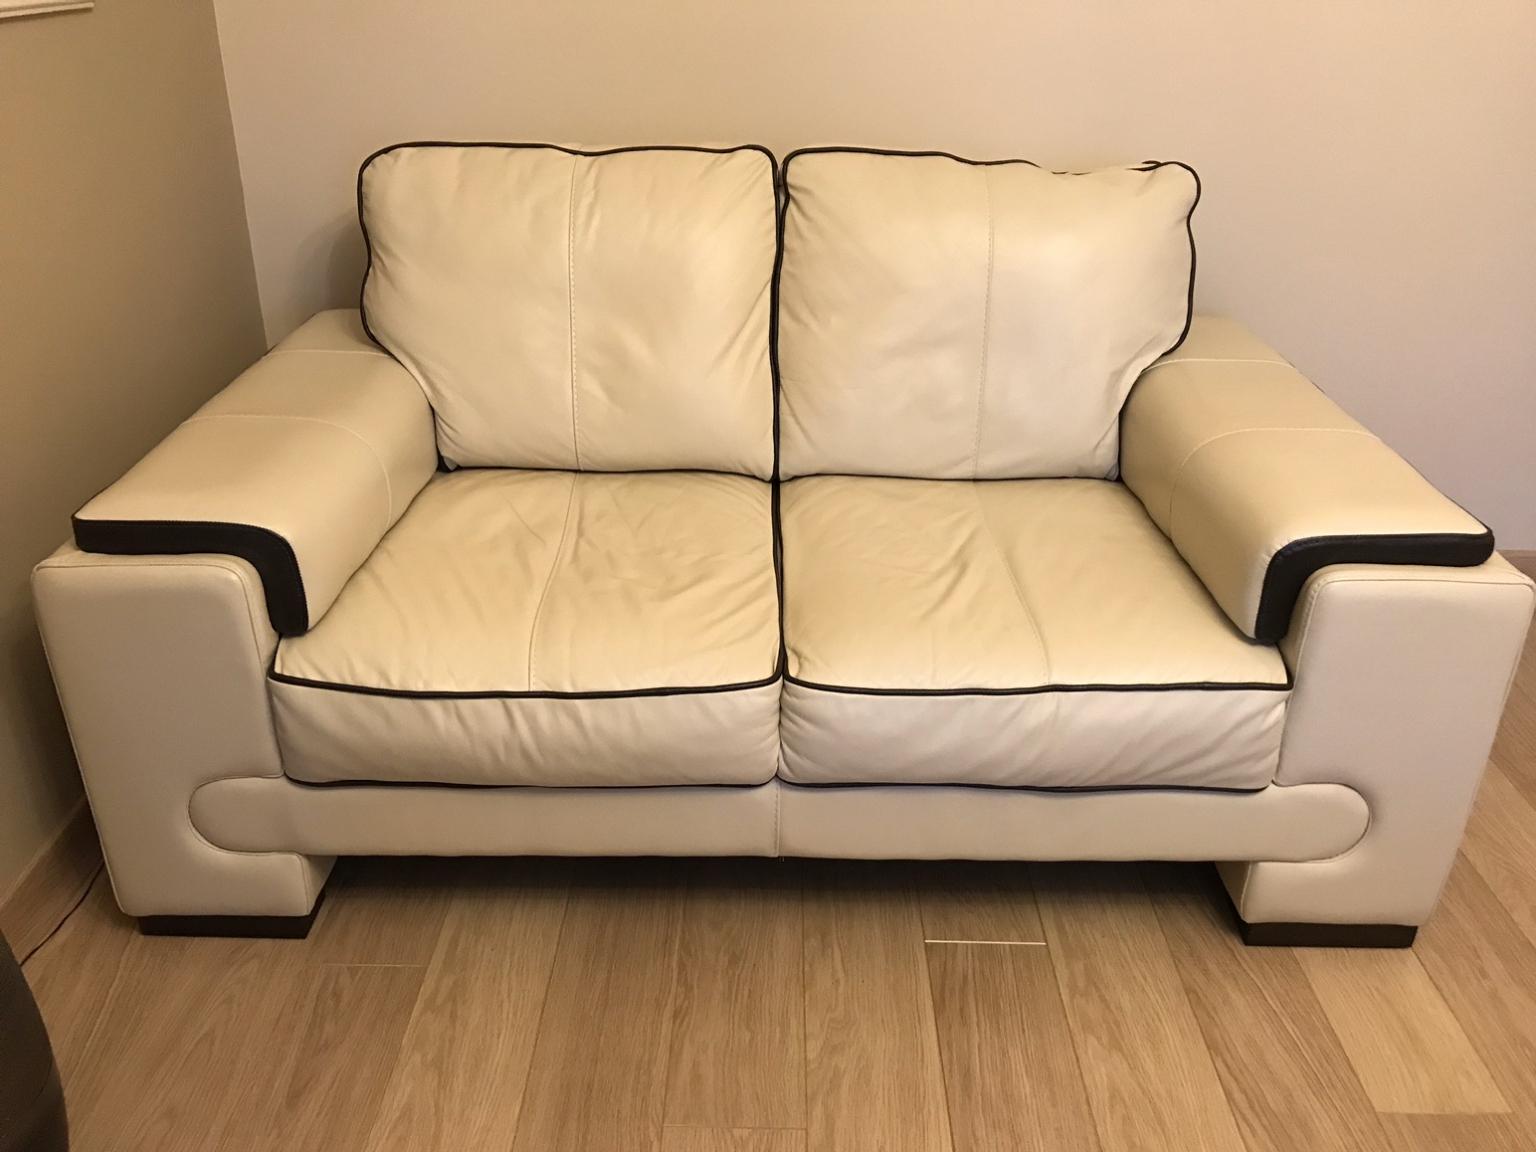 dfs leather sofa guarantee